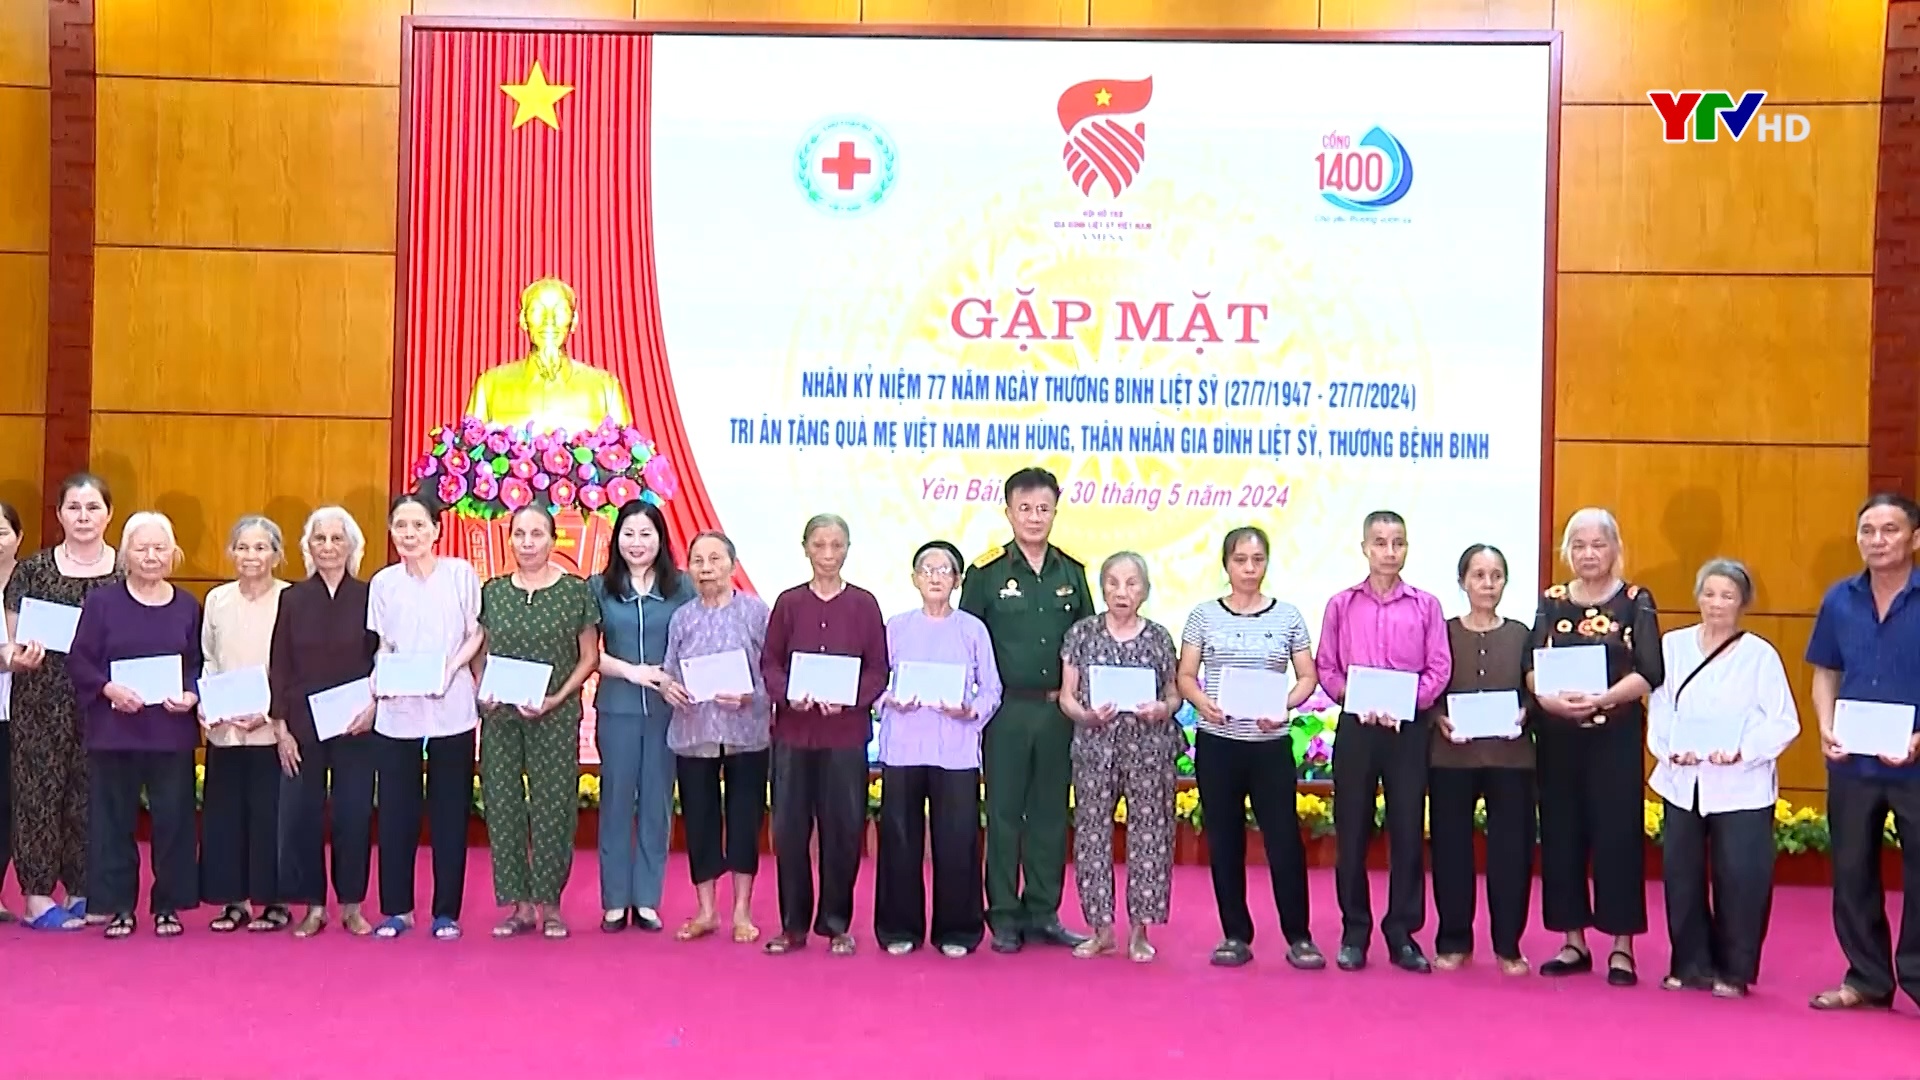 Yên Bái gặp mặt tri ân tặng quà Mẹ Việt Nam anh hùng, các gia đình thân nhân liệt sĩ, thương bệnh binh